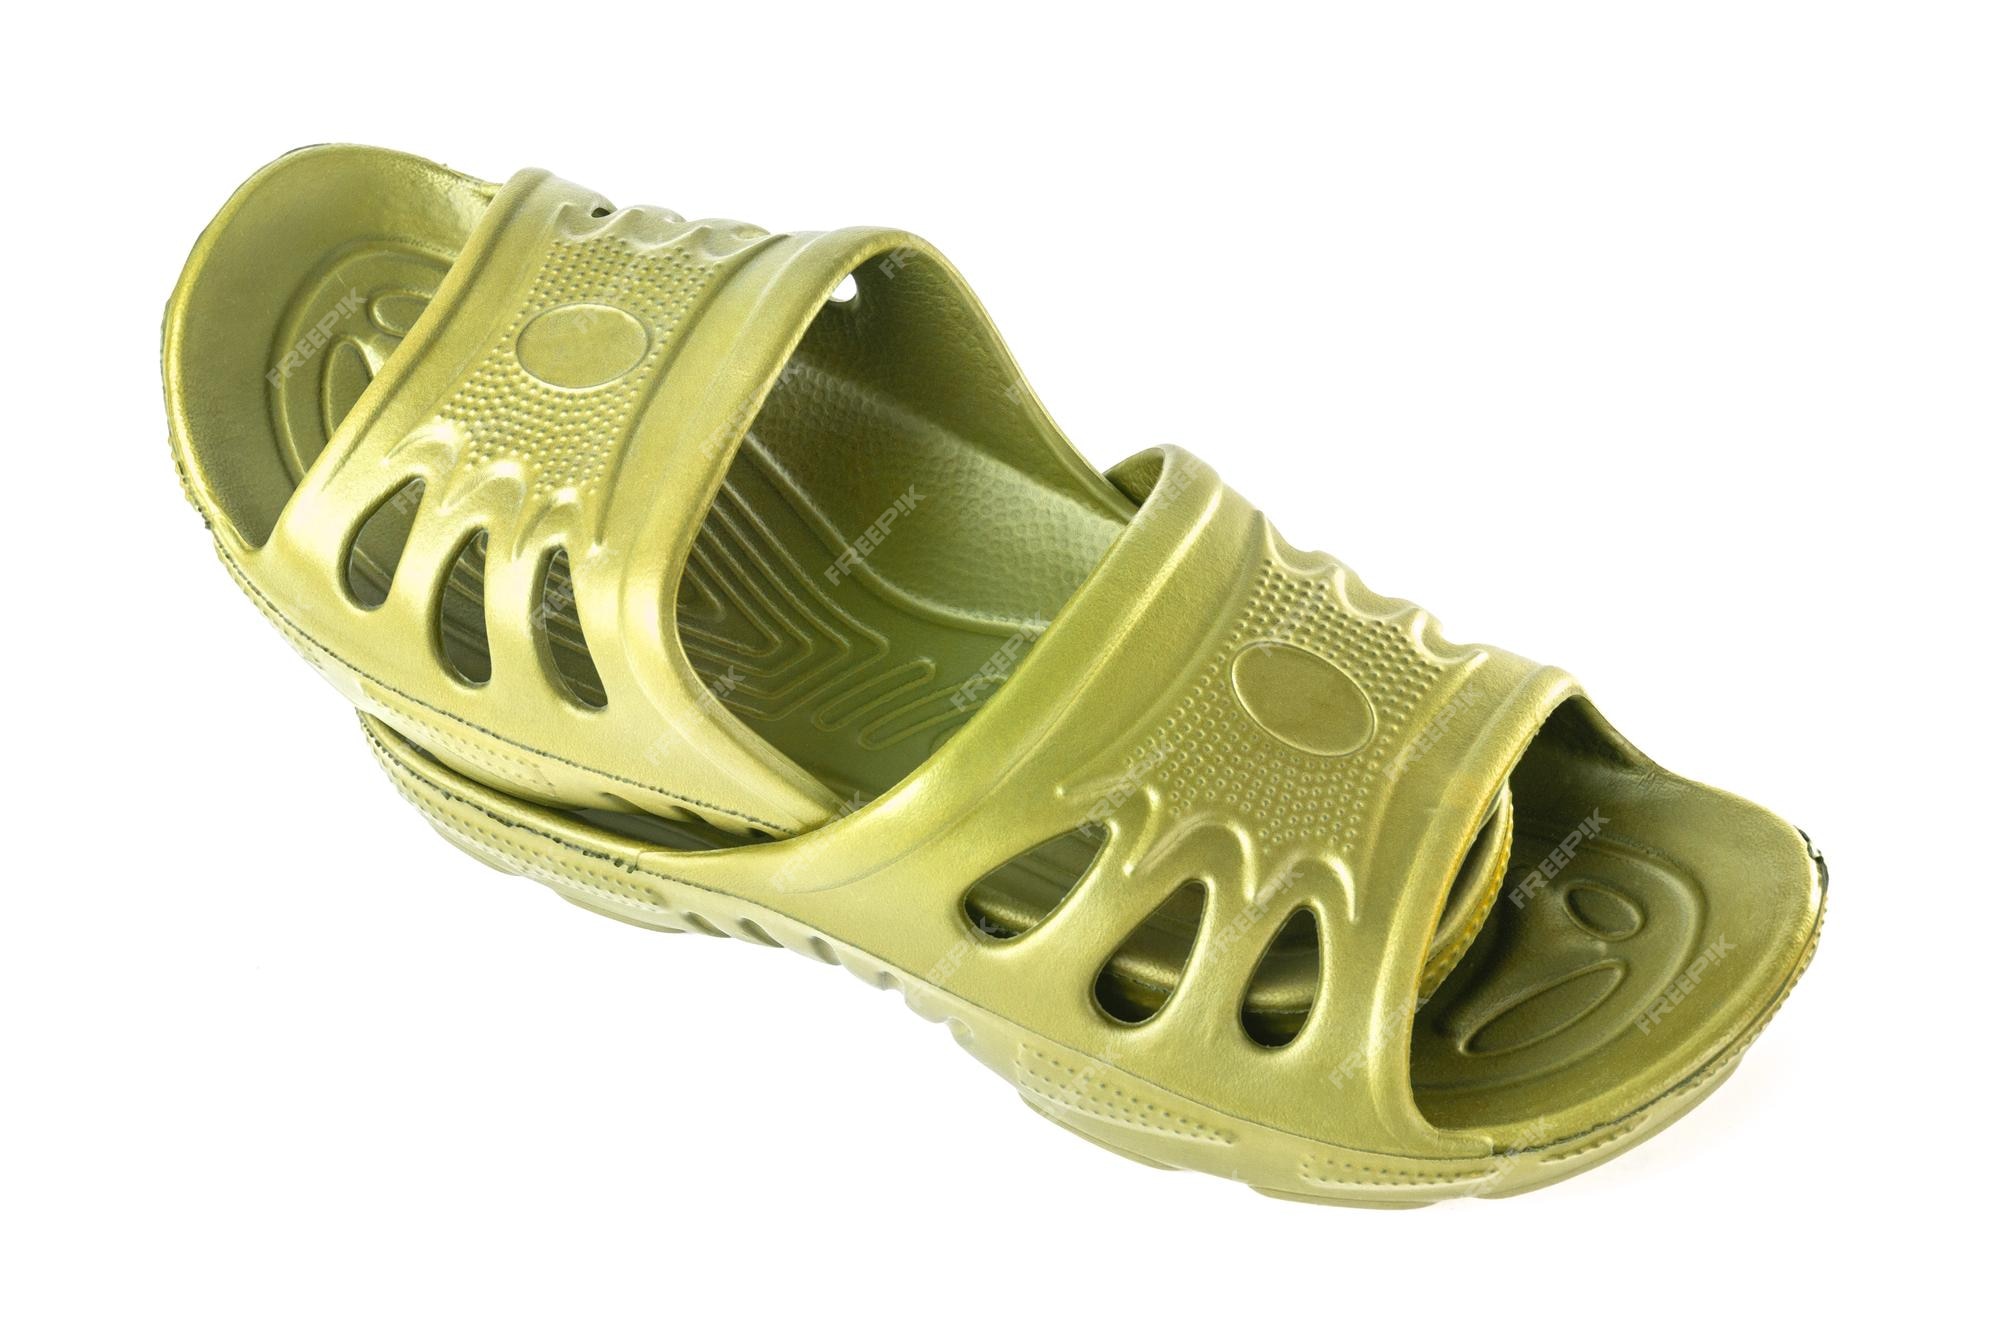 Par de zapatillas de goma amarillas duraderas y baratas, una de otra, aisladas en fondo blanco | Foto Premium